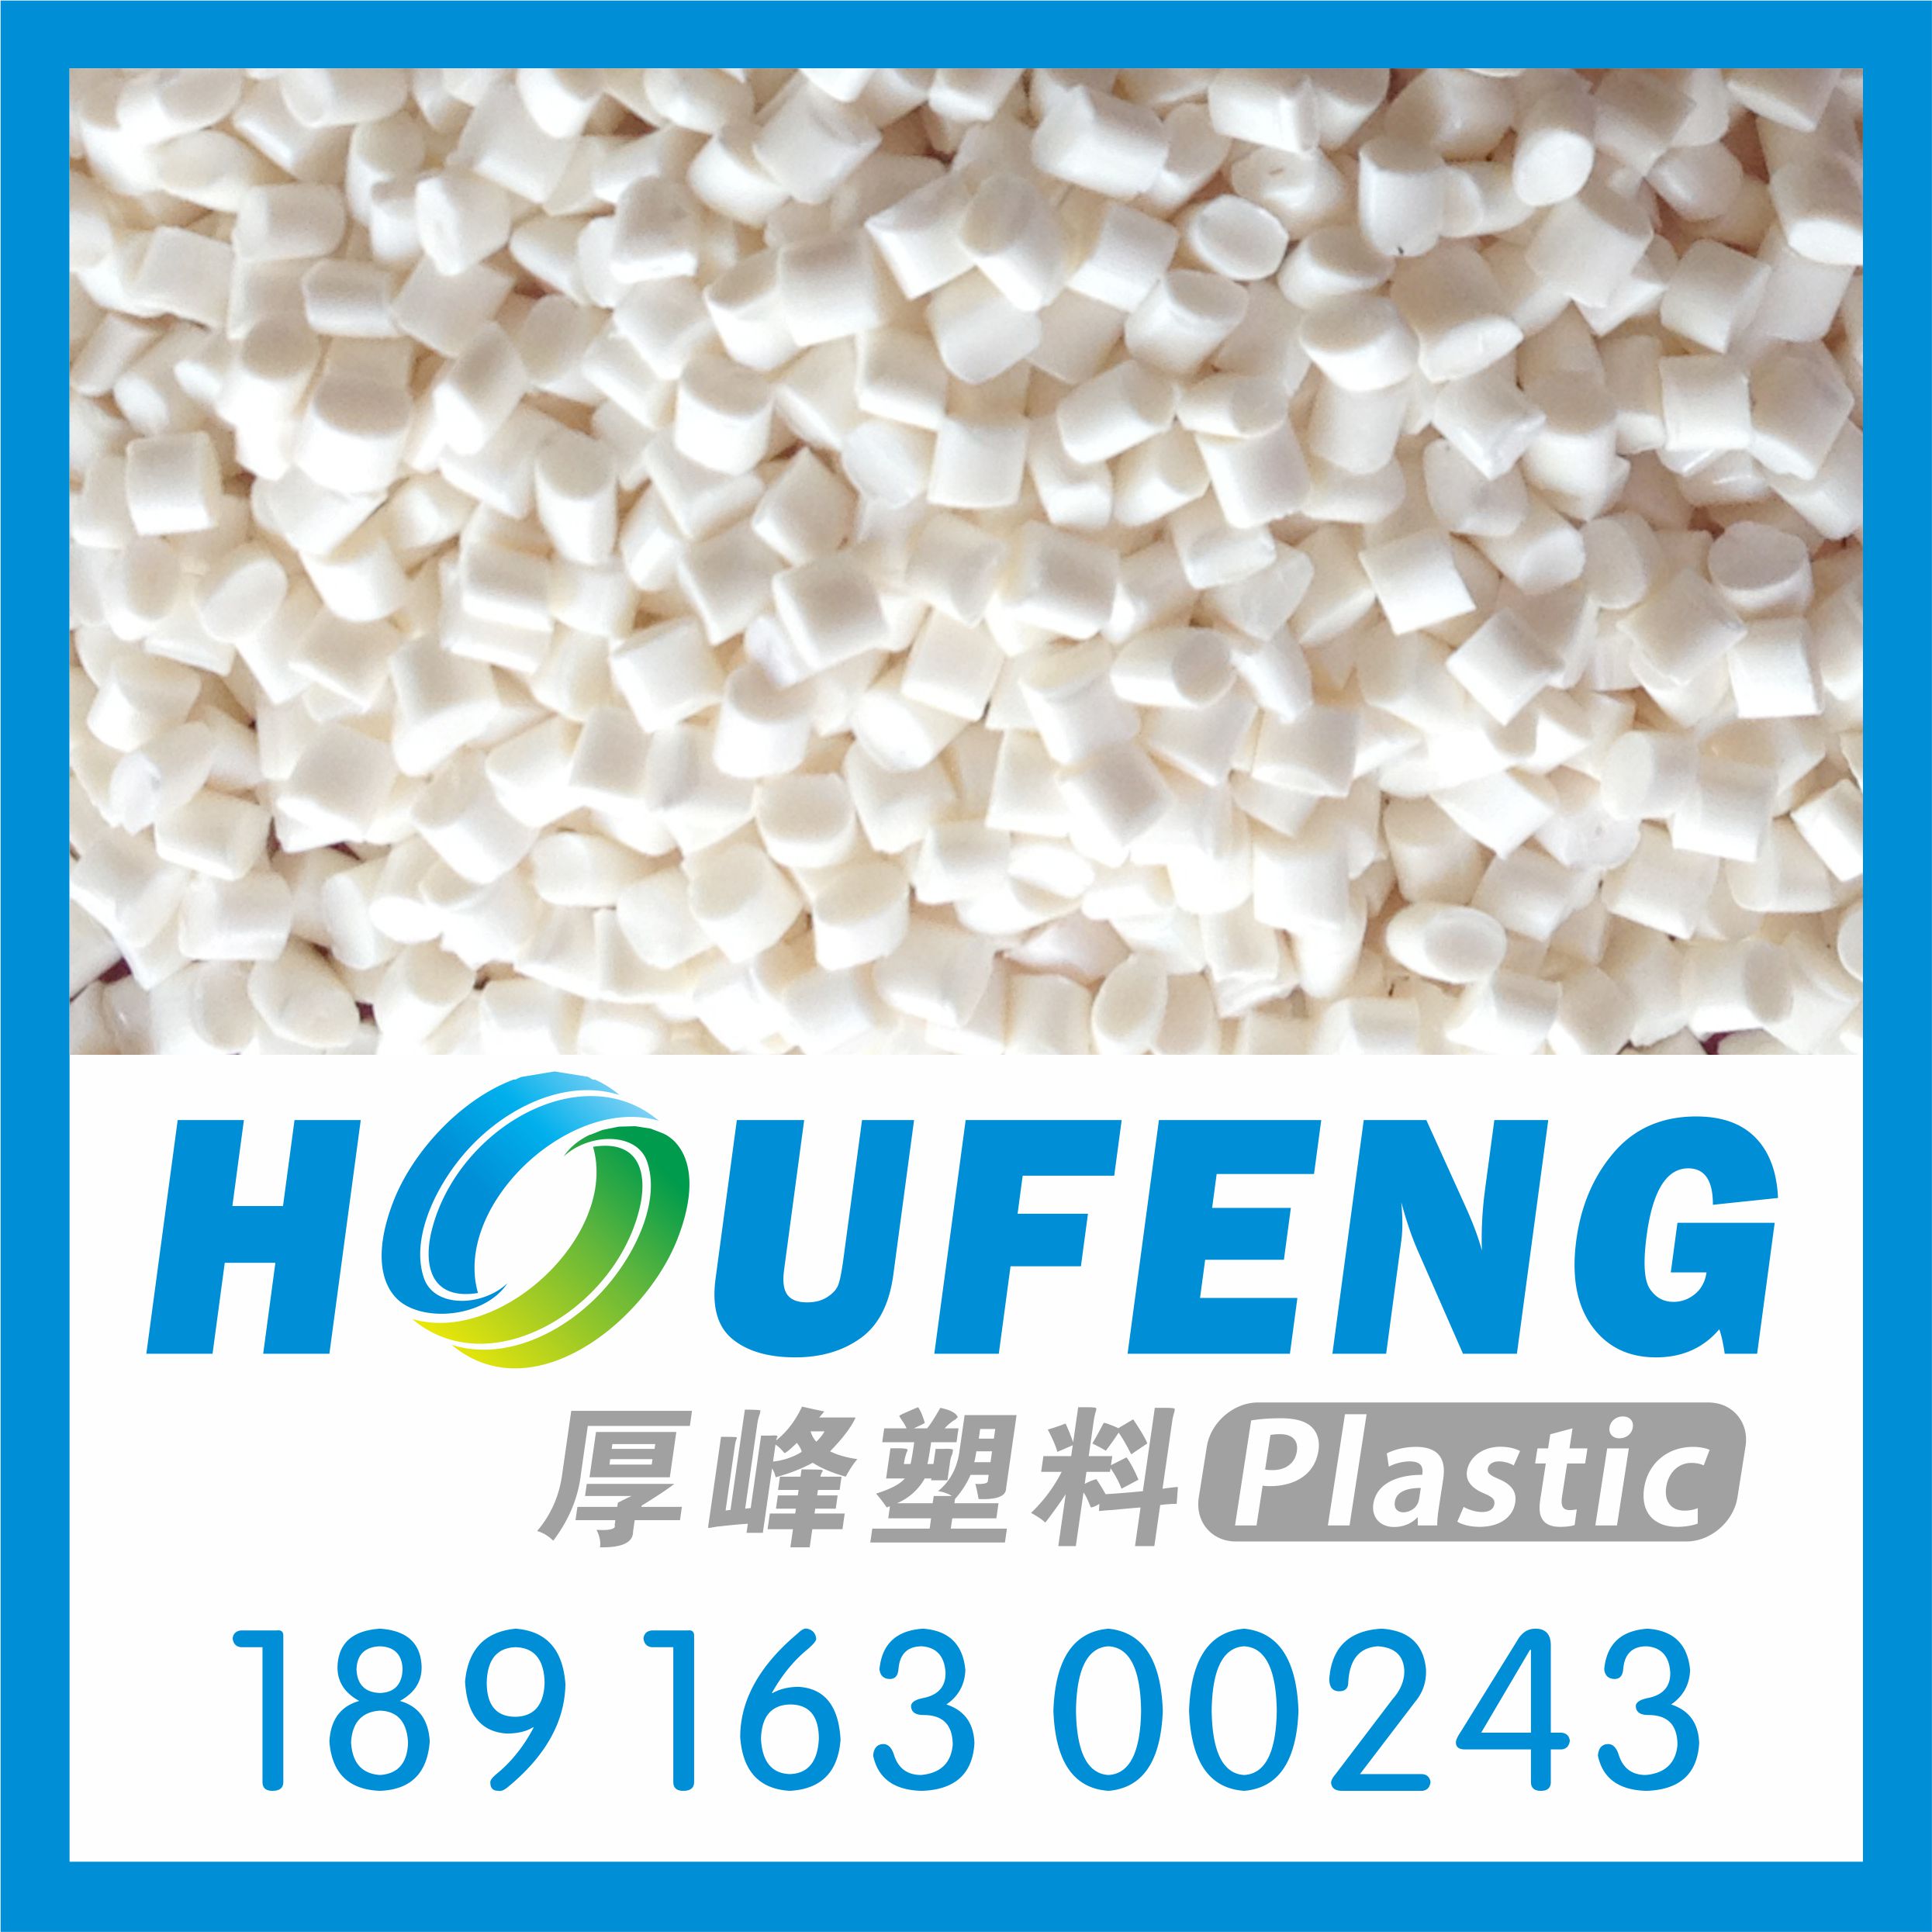 上海厚峰塑胶科技有限公司